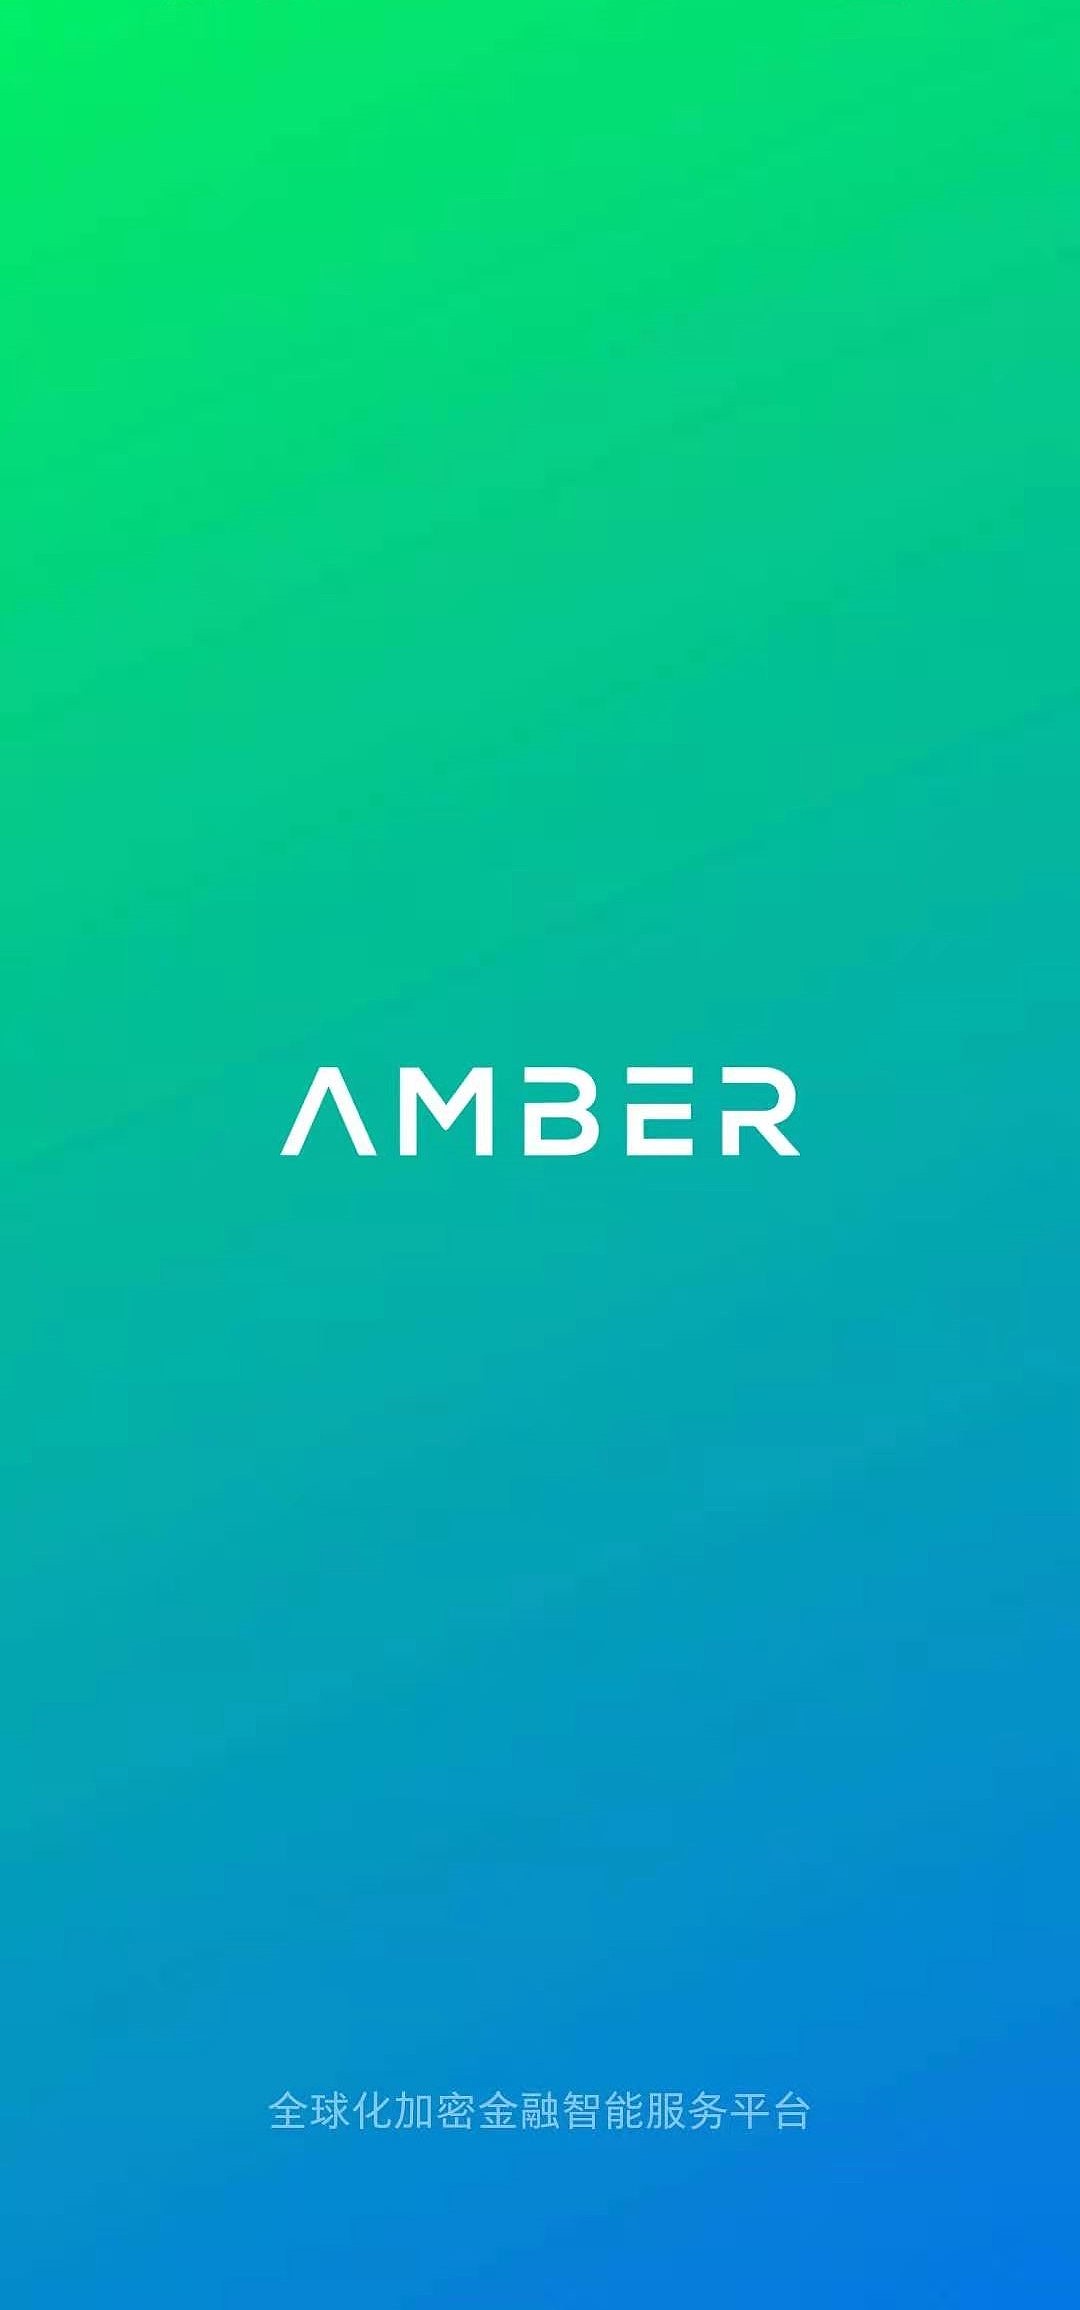 AmberApp，AmberGroup，